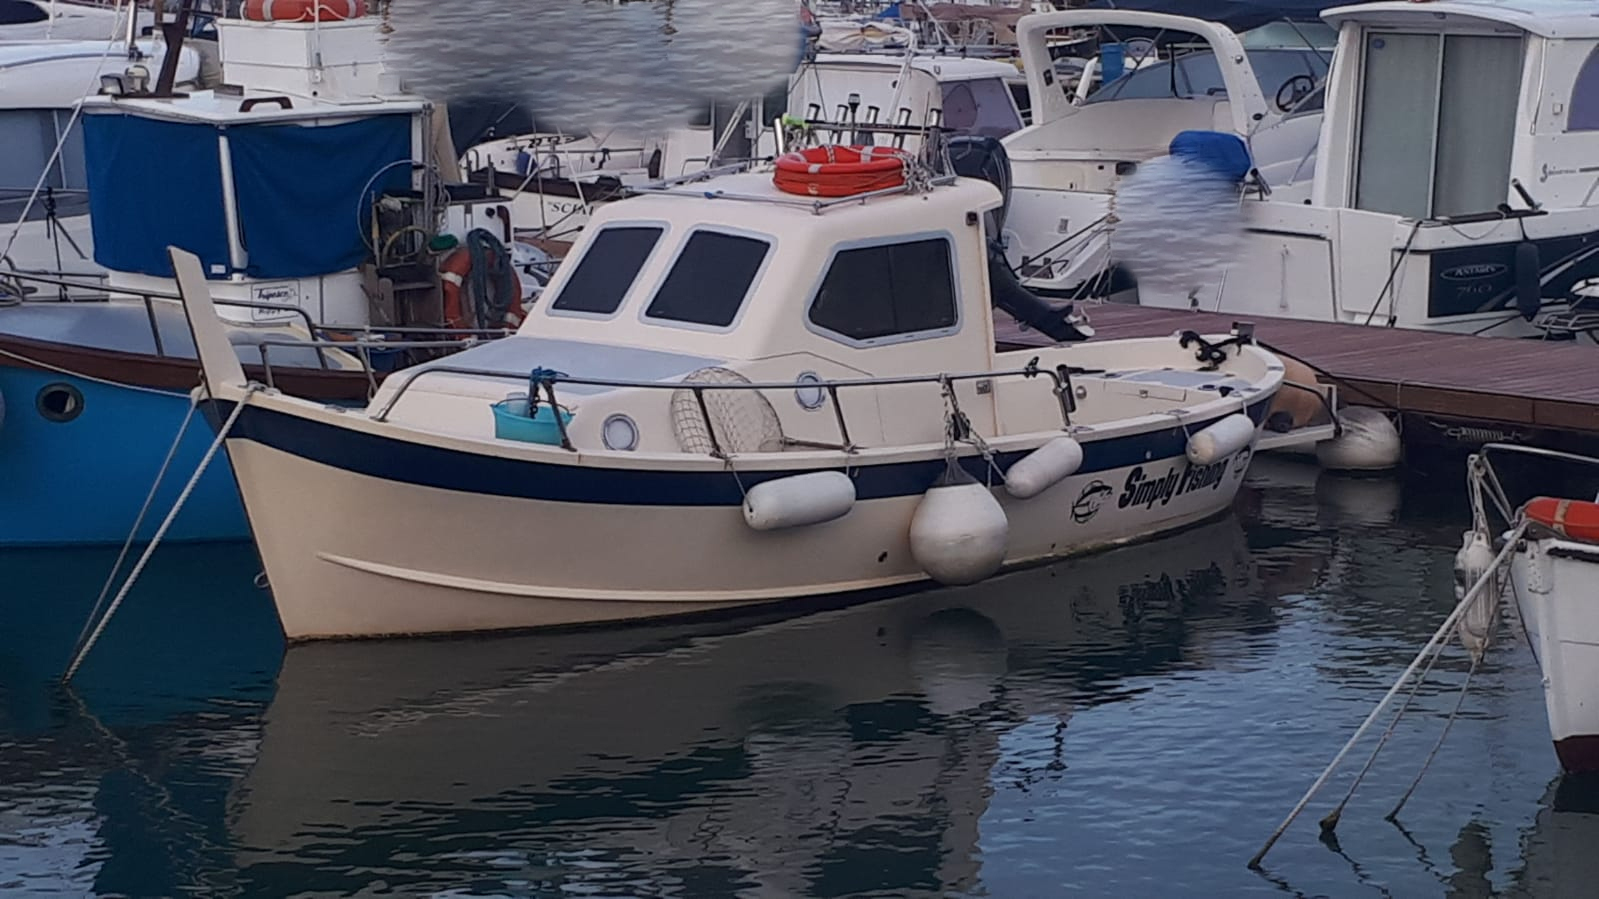 gozzo calcagno marlin 2068 vm boat barco bateaux livorno boats pilotina fishing fisherman natante liguria